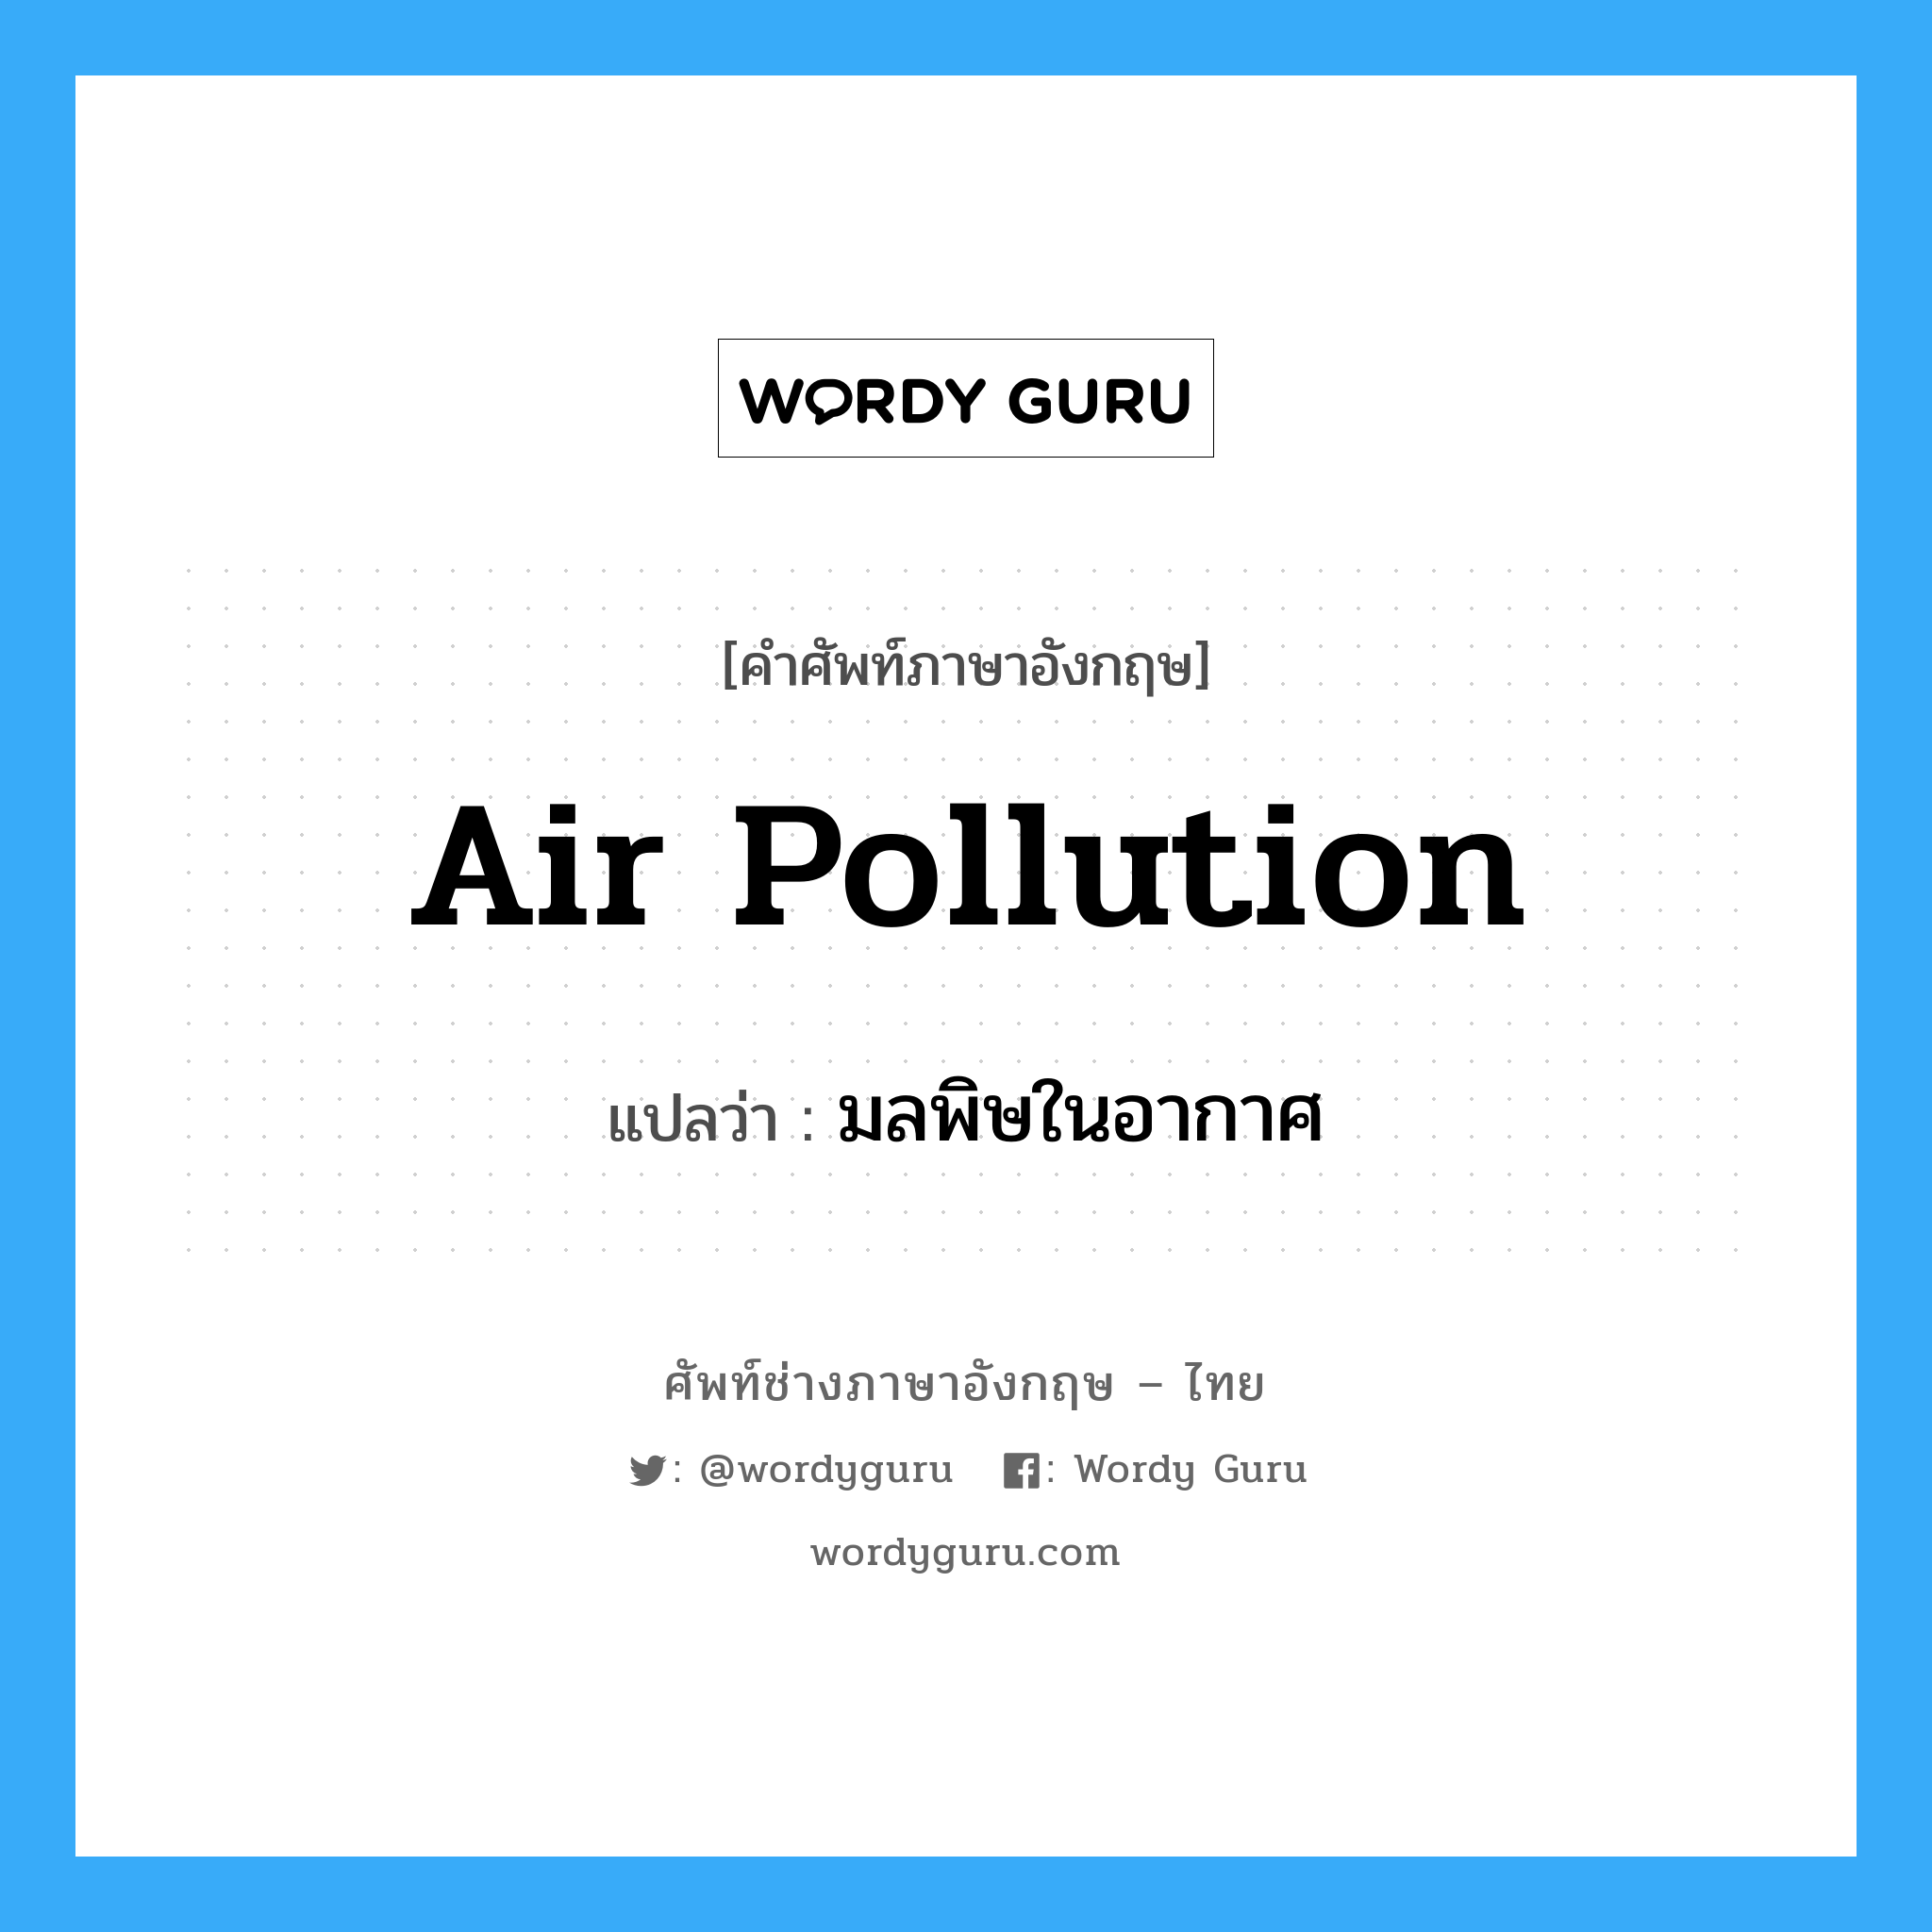 มลพิษในอากาศ ภาษาอังกฤษ?, คำศัพท์ช่างภาษาอังกฤษ - ไทย มลพิษในอากาศ คำศัพท์ภาษาอังกฤษ มลพิษในอากาศ แปลว่า air pollution